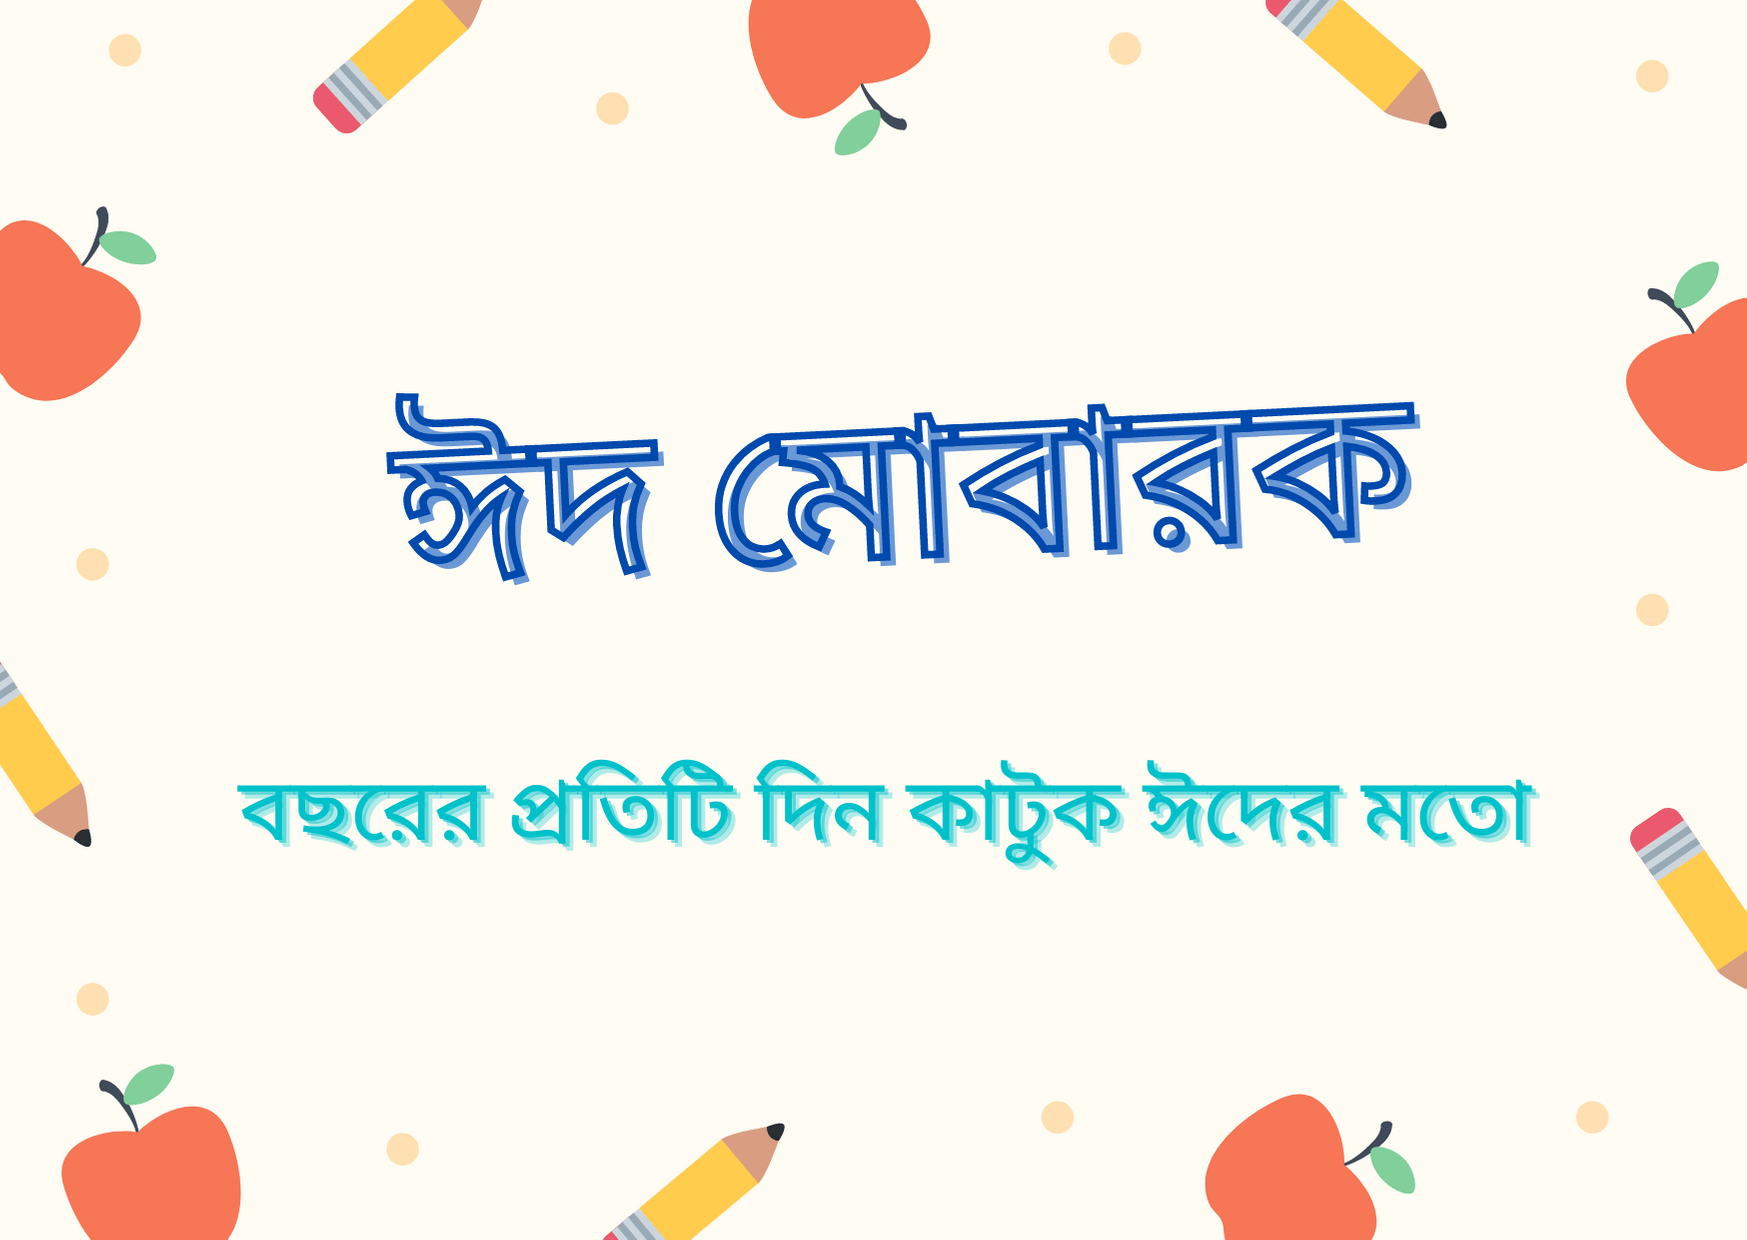 Eid greetings in Bengali